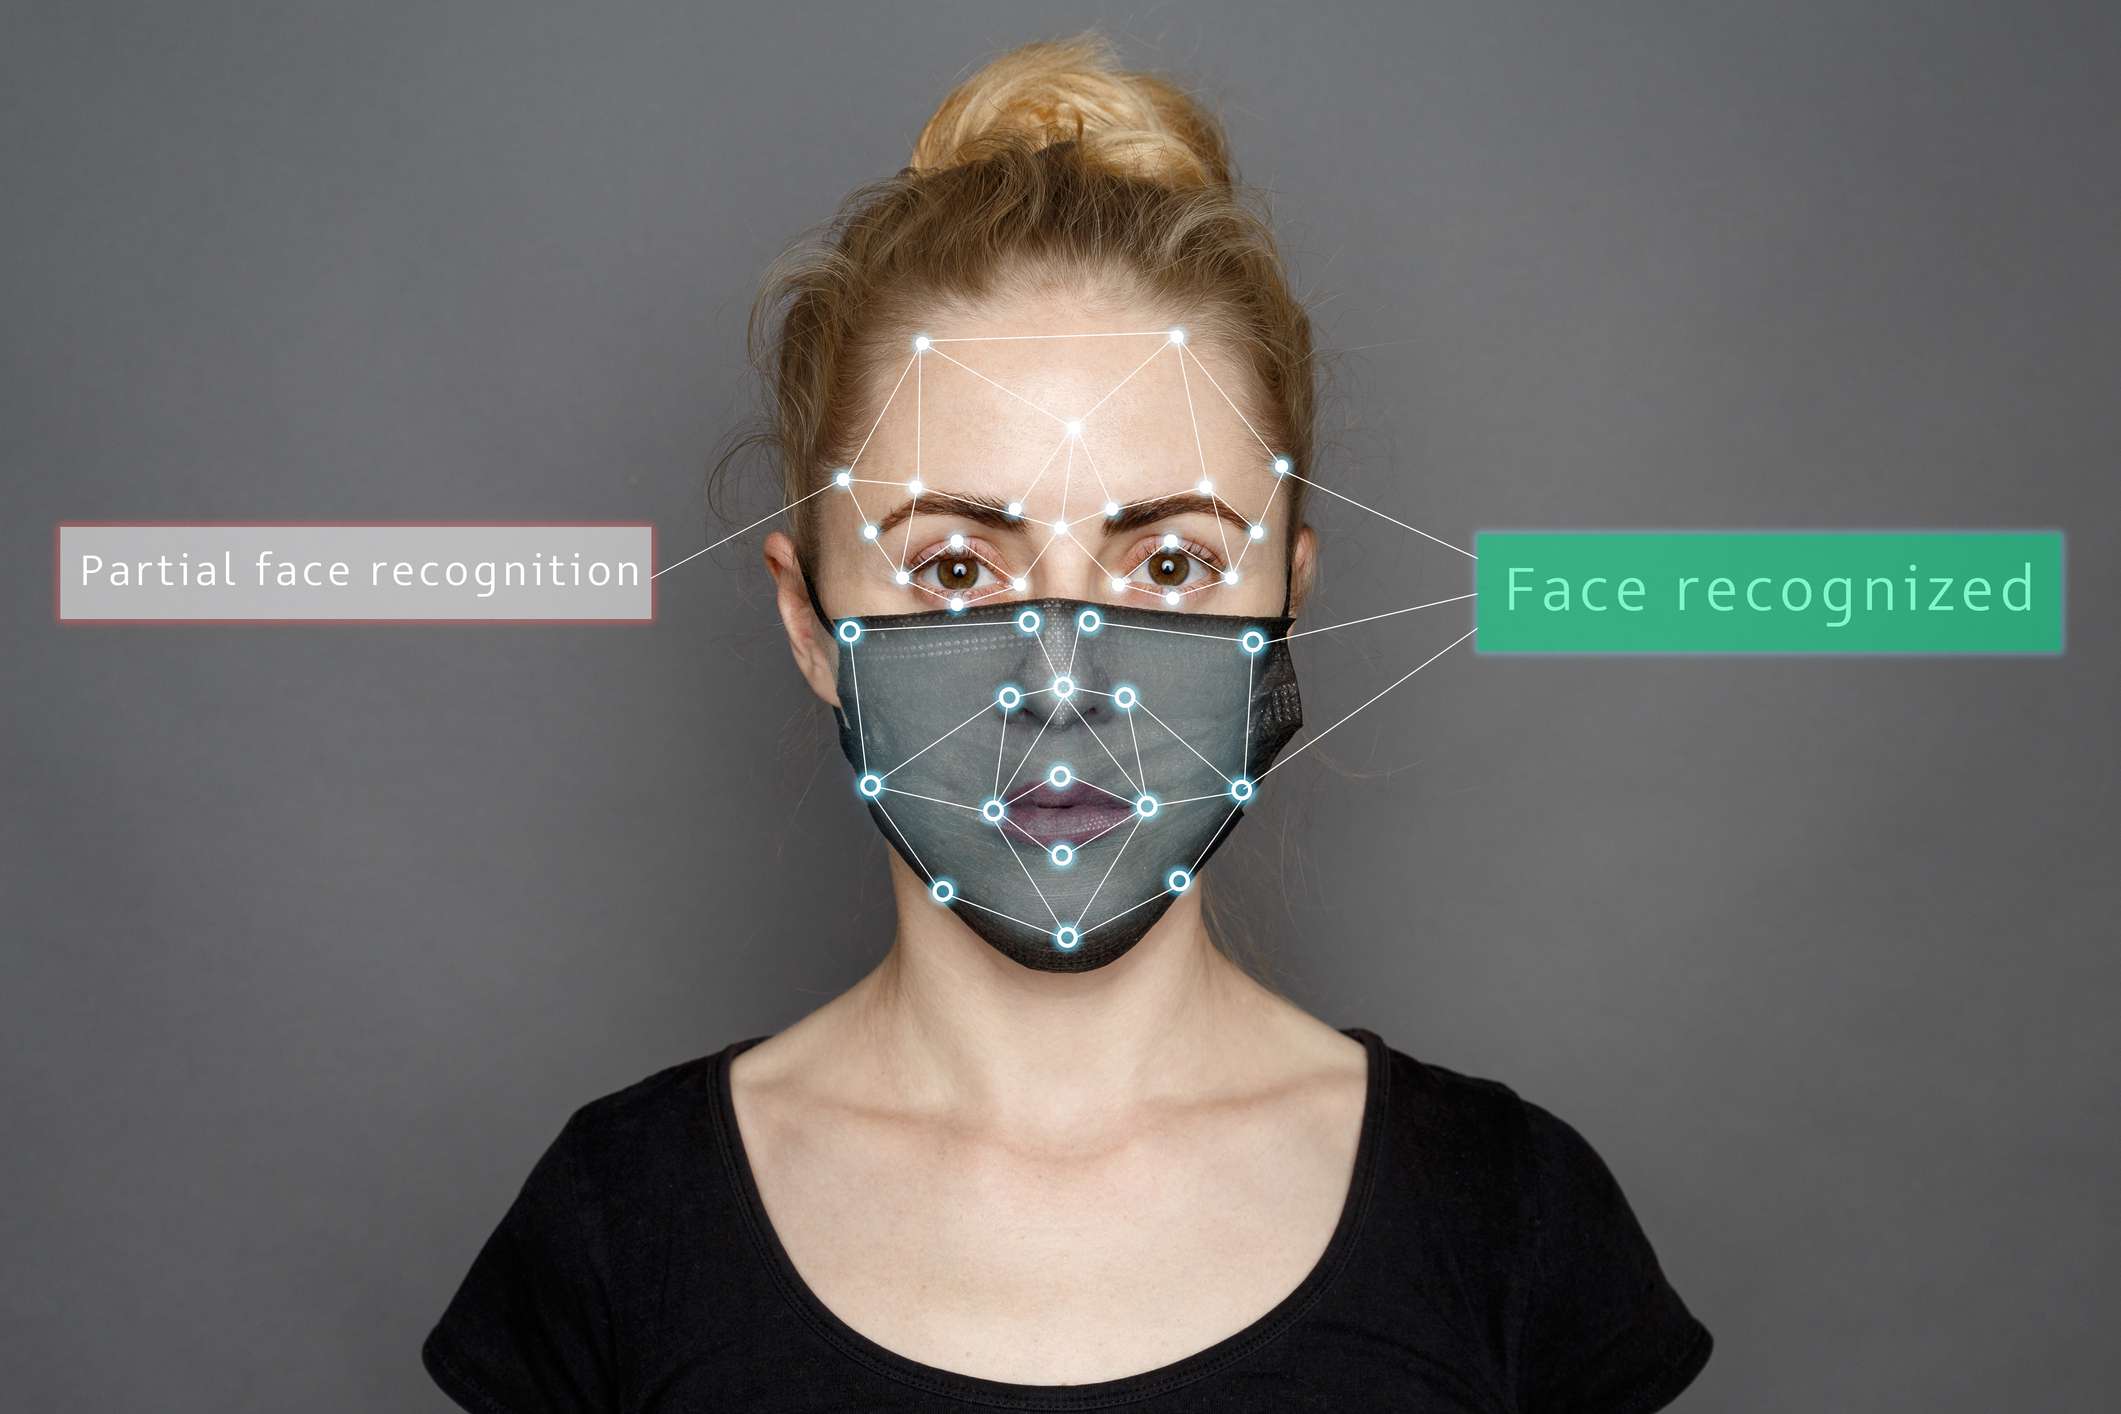 програмне забезпечення для розпізнавання обличчя сканування та впізнання жінки в масці